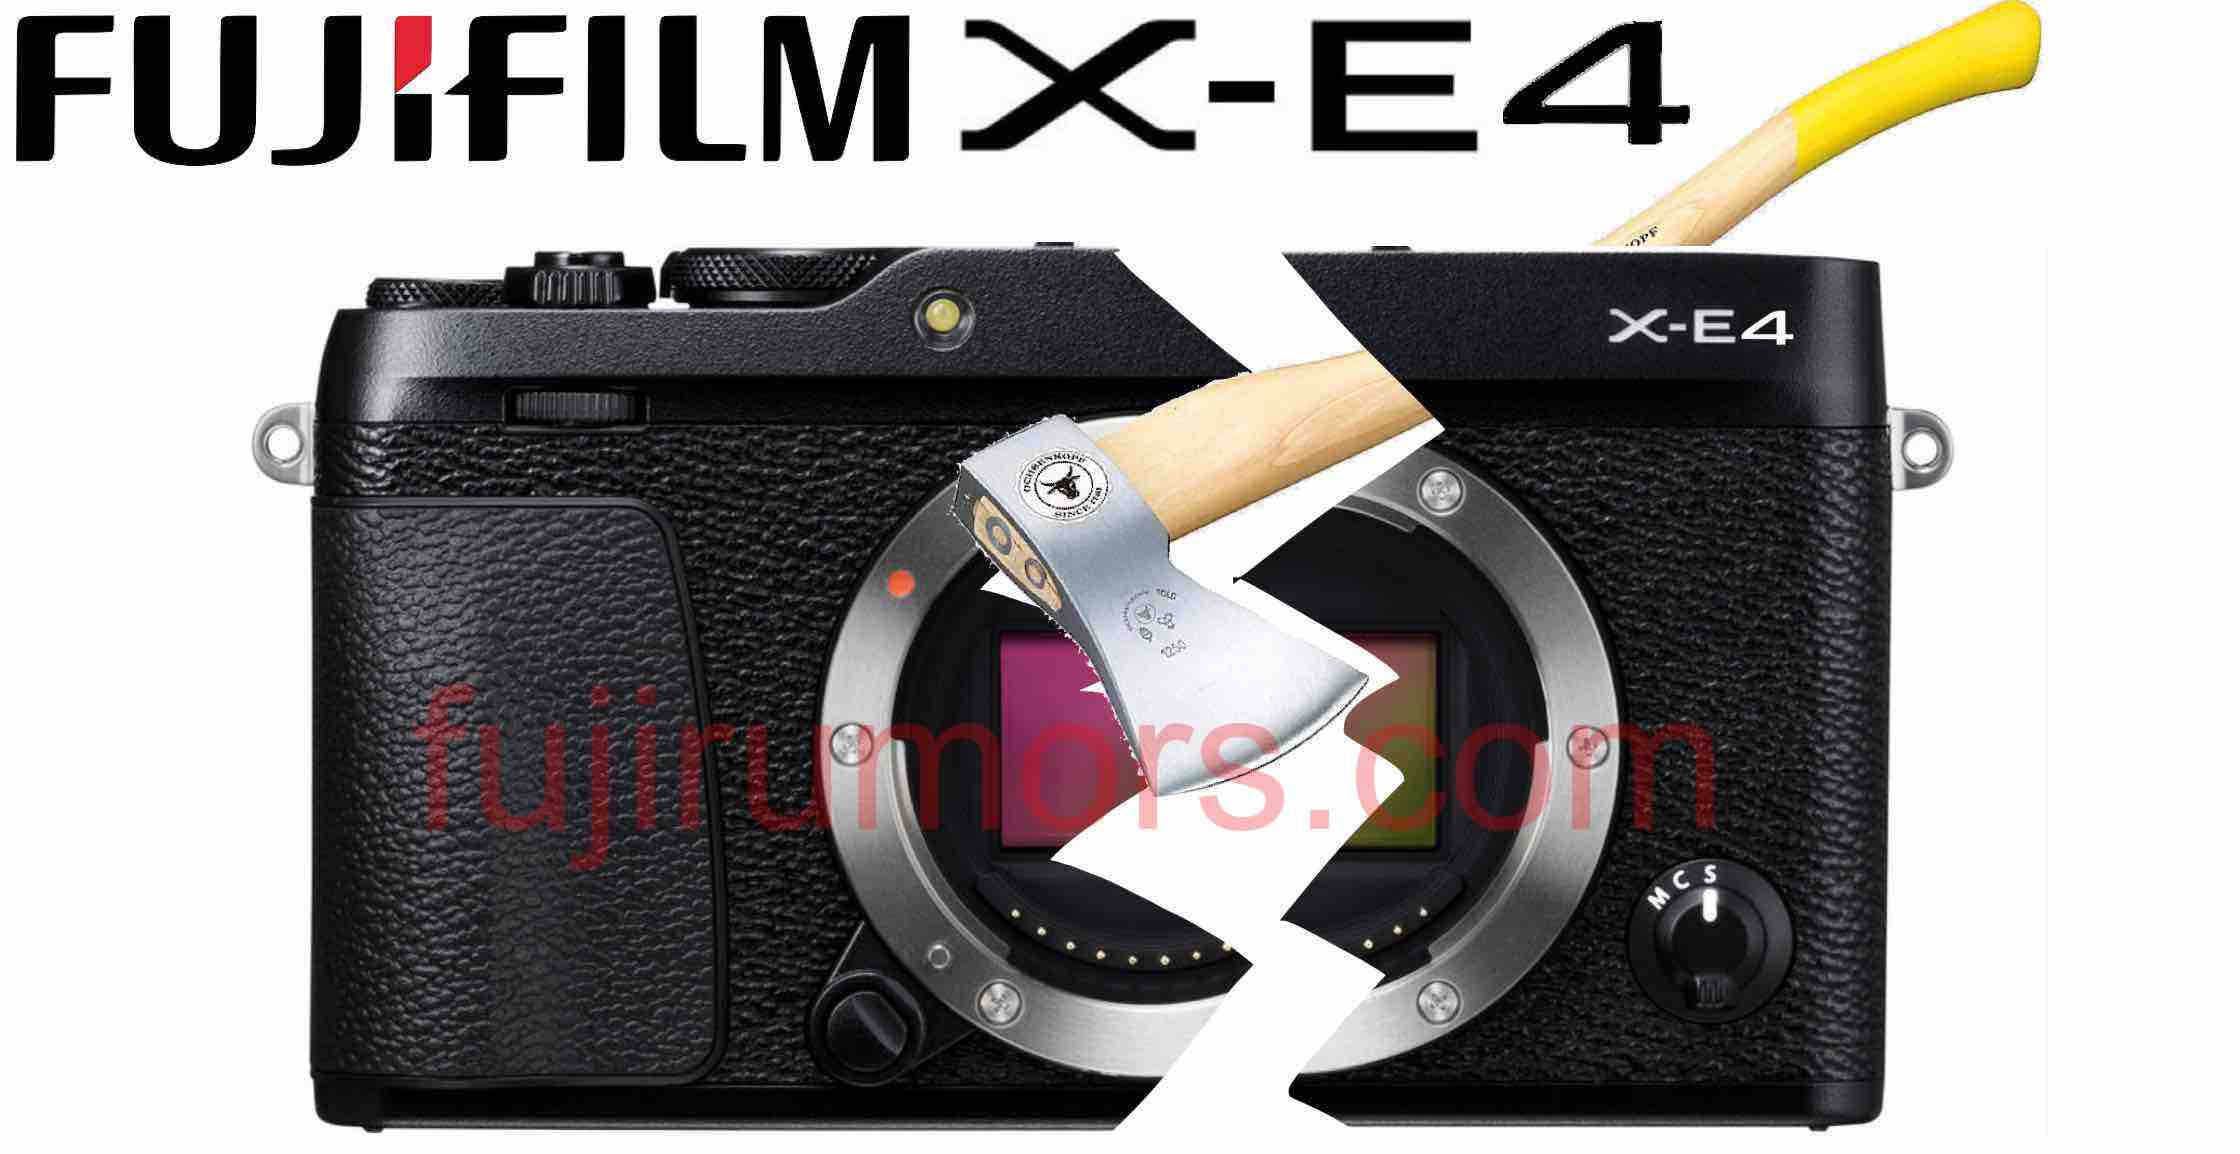 Fujifilm xe4